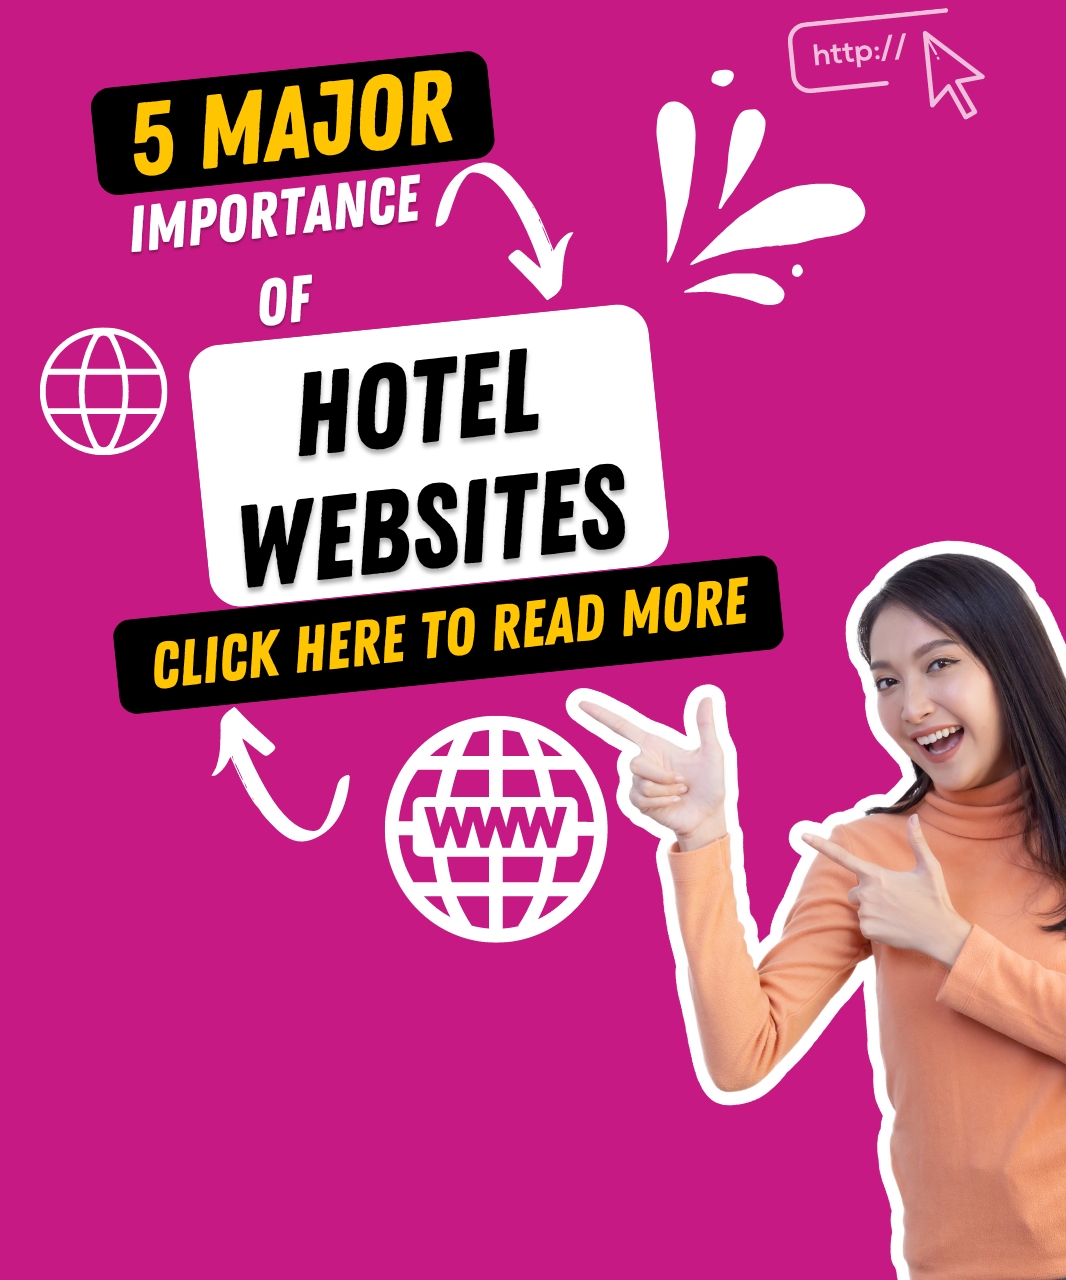 5 Major Importance of Hotel Websites